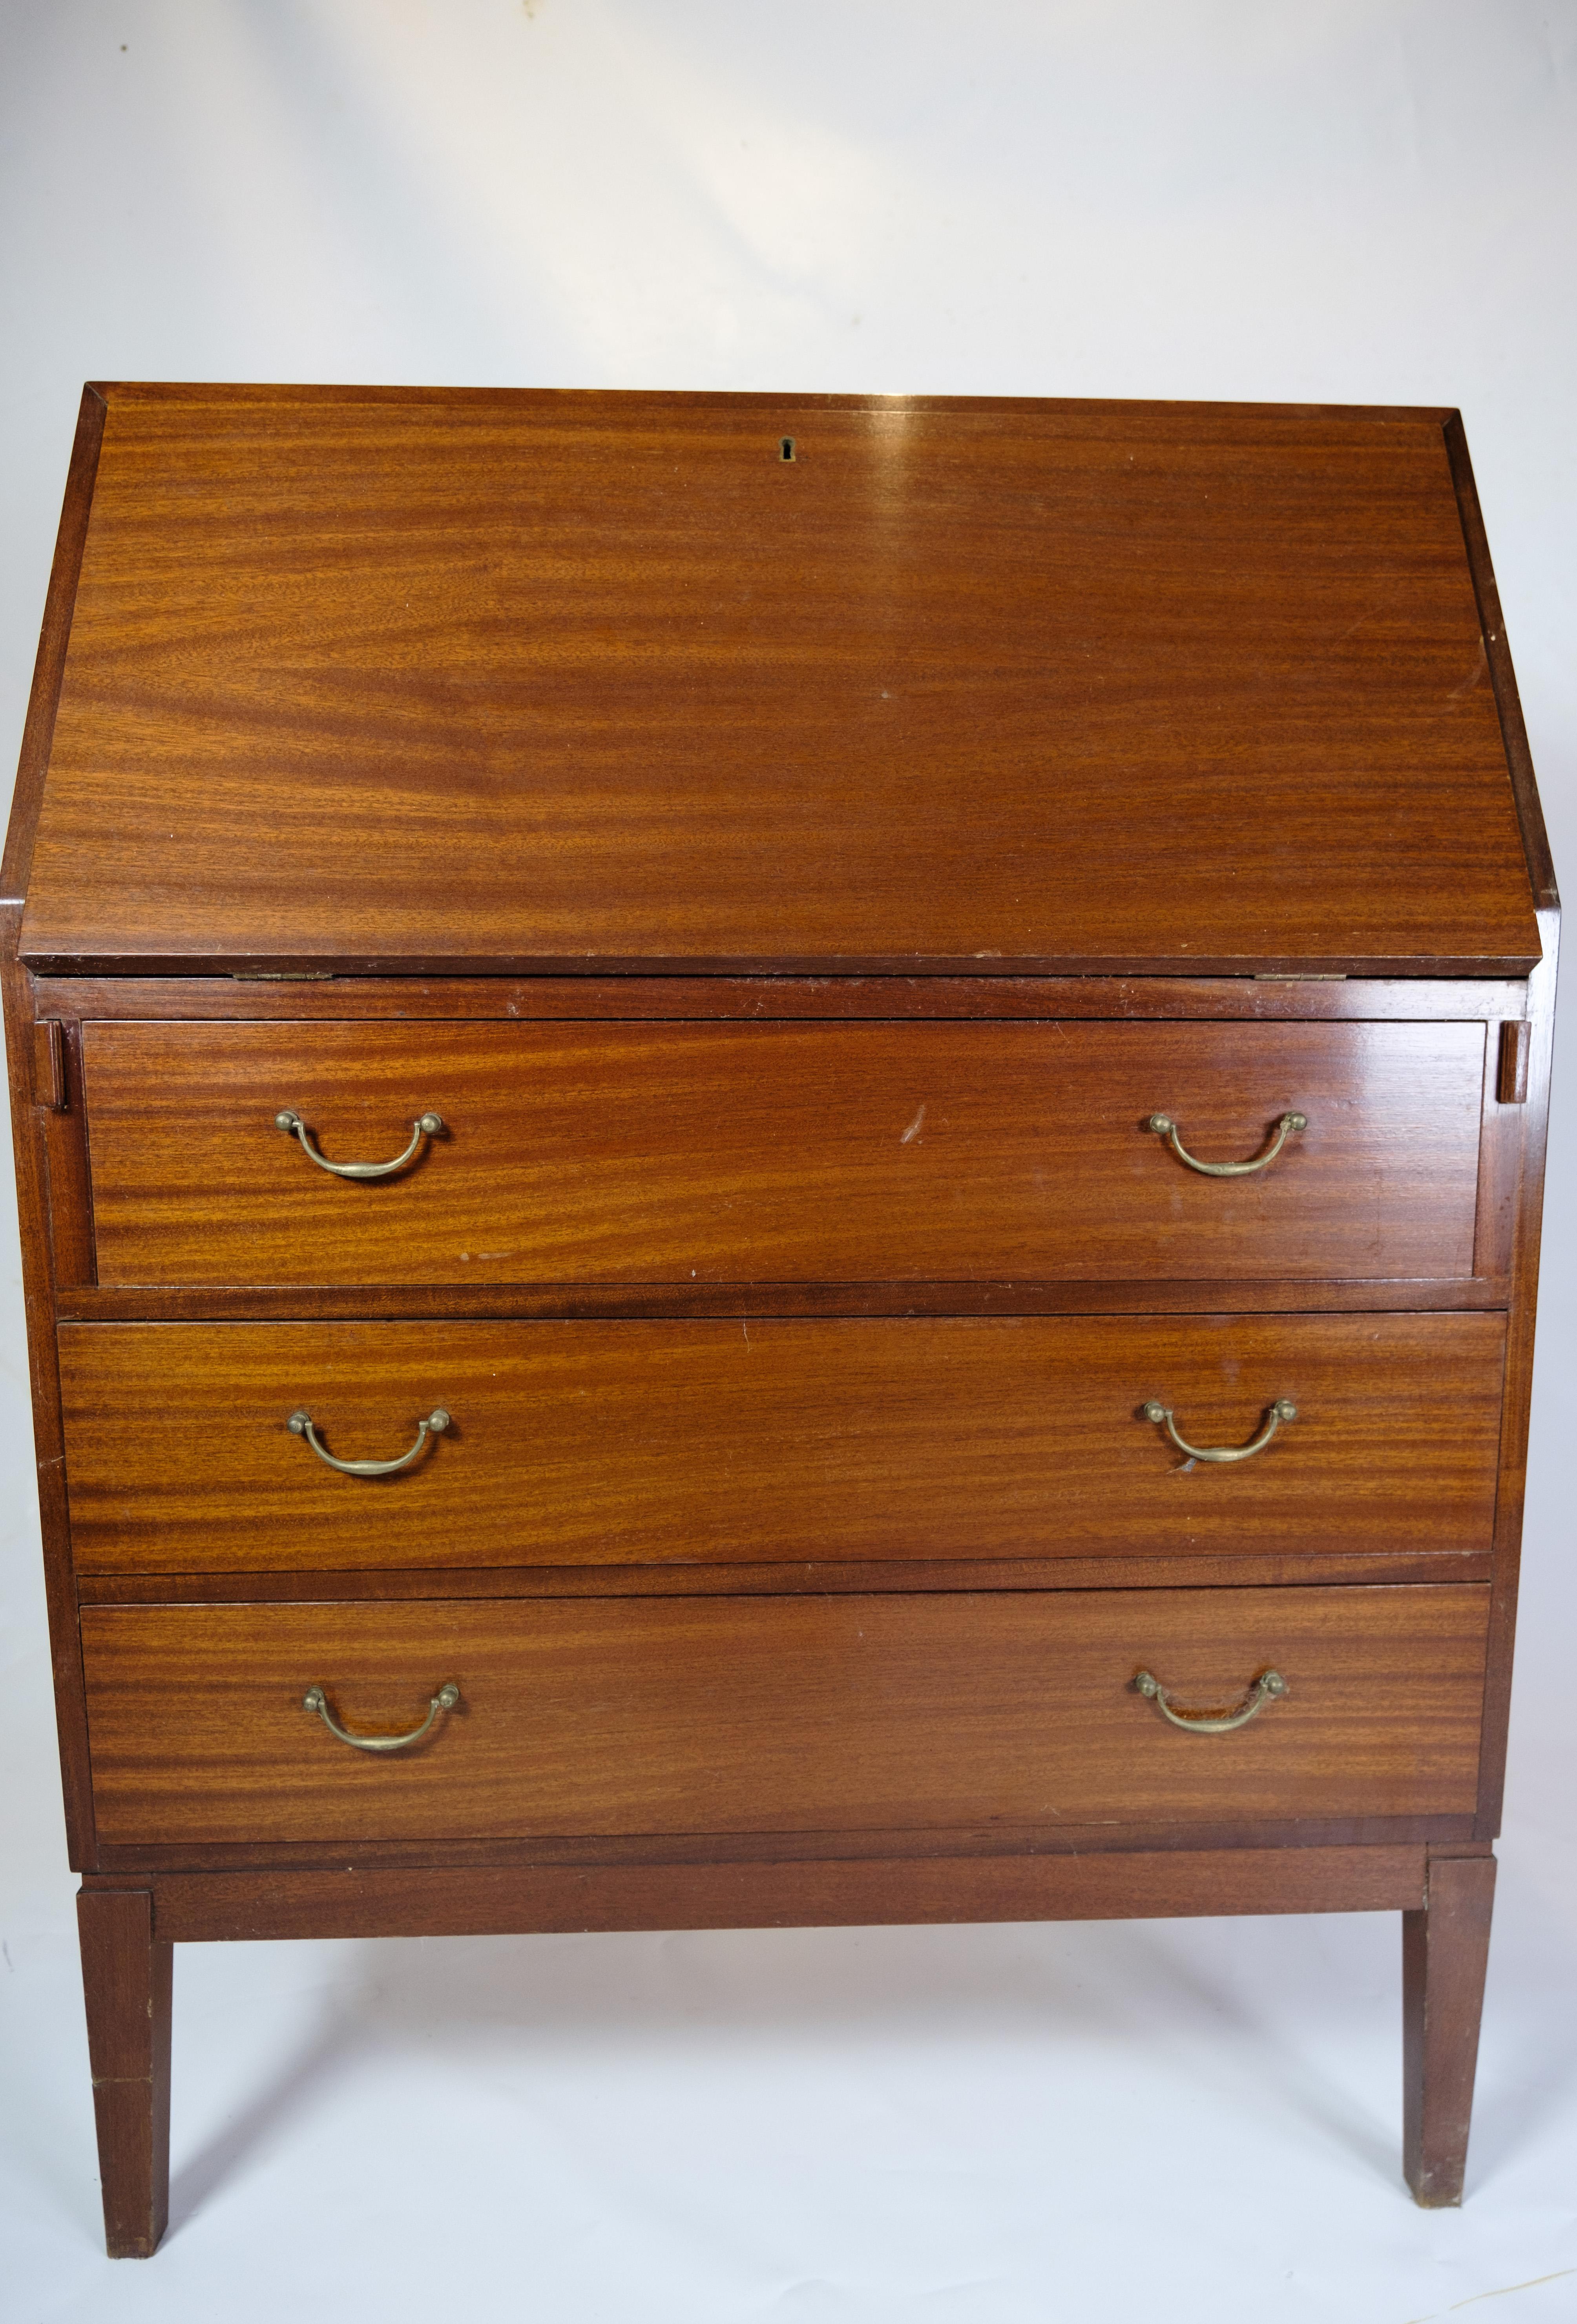 Ce chatol à trois tiroirs est un meuble artisanal des années 1920. Fabriqué en acajou clair et orné de poignées et de ferrures en laiton, il respire à la fois l'élégance et la fonctionnalité.

Avec ses étagères intérieures et ses tiroirs spacieux,